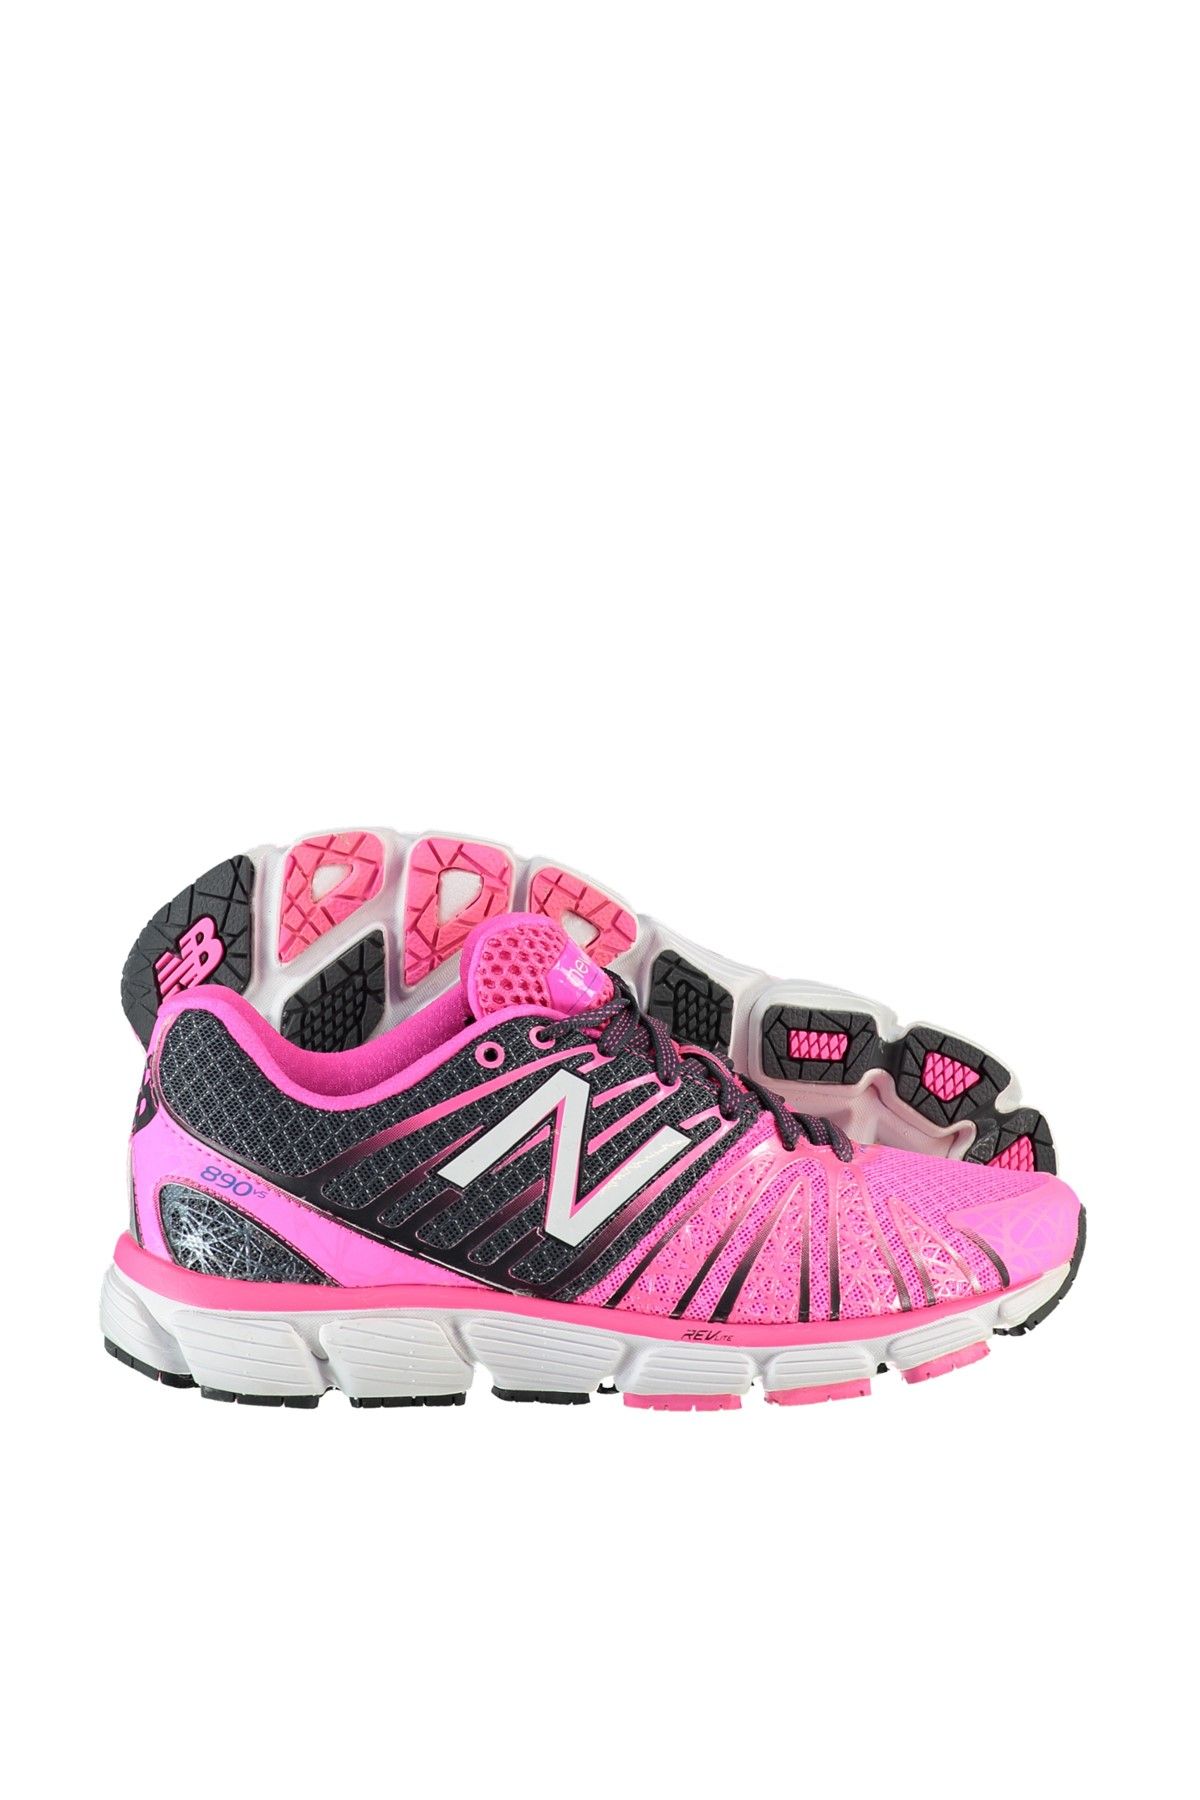 New Balance 890 Kadın Koşu & Antrenman Ayakkabısı - W890PK5